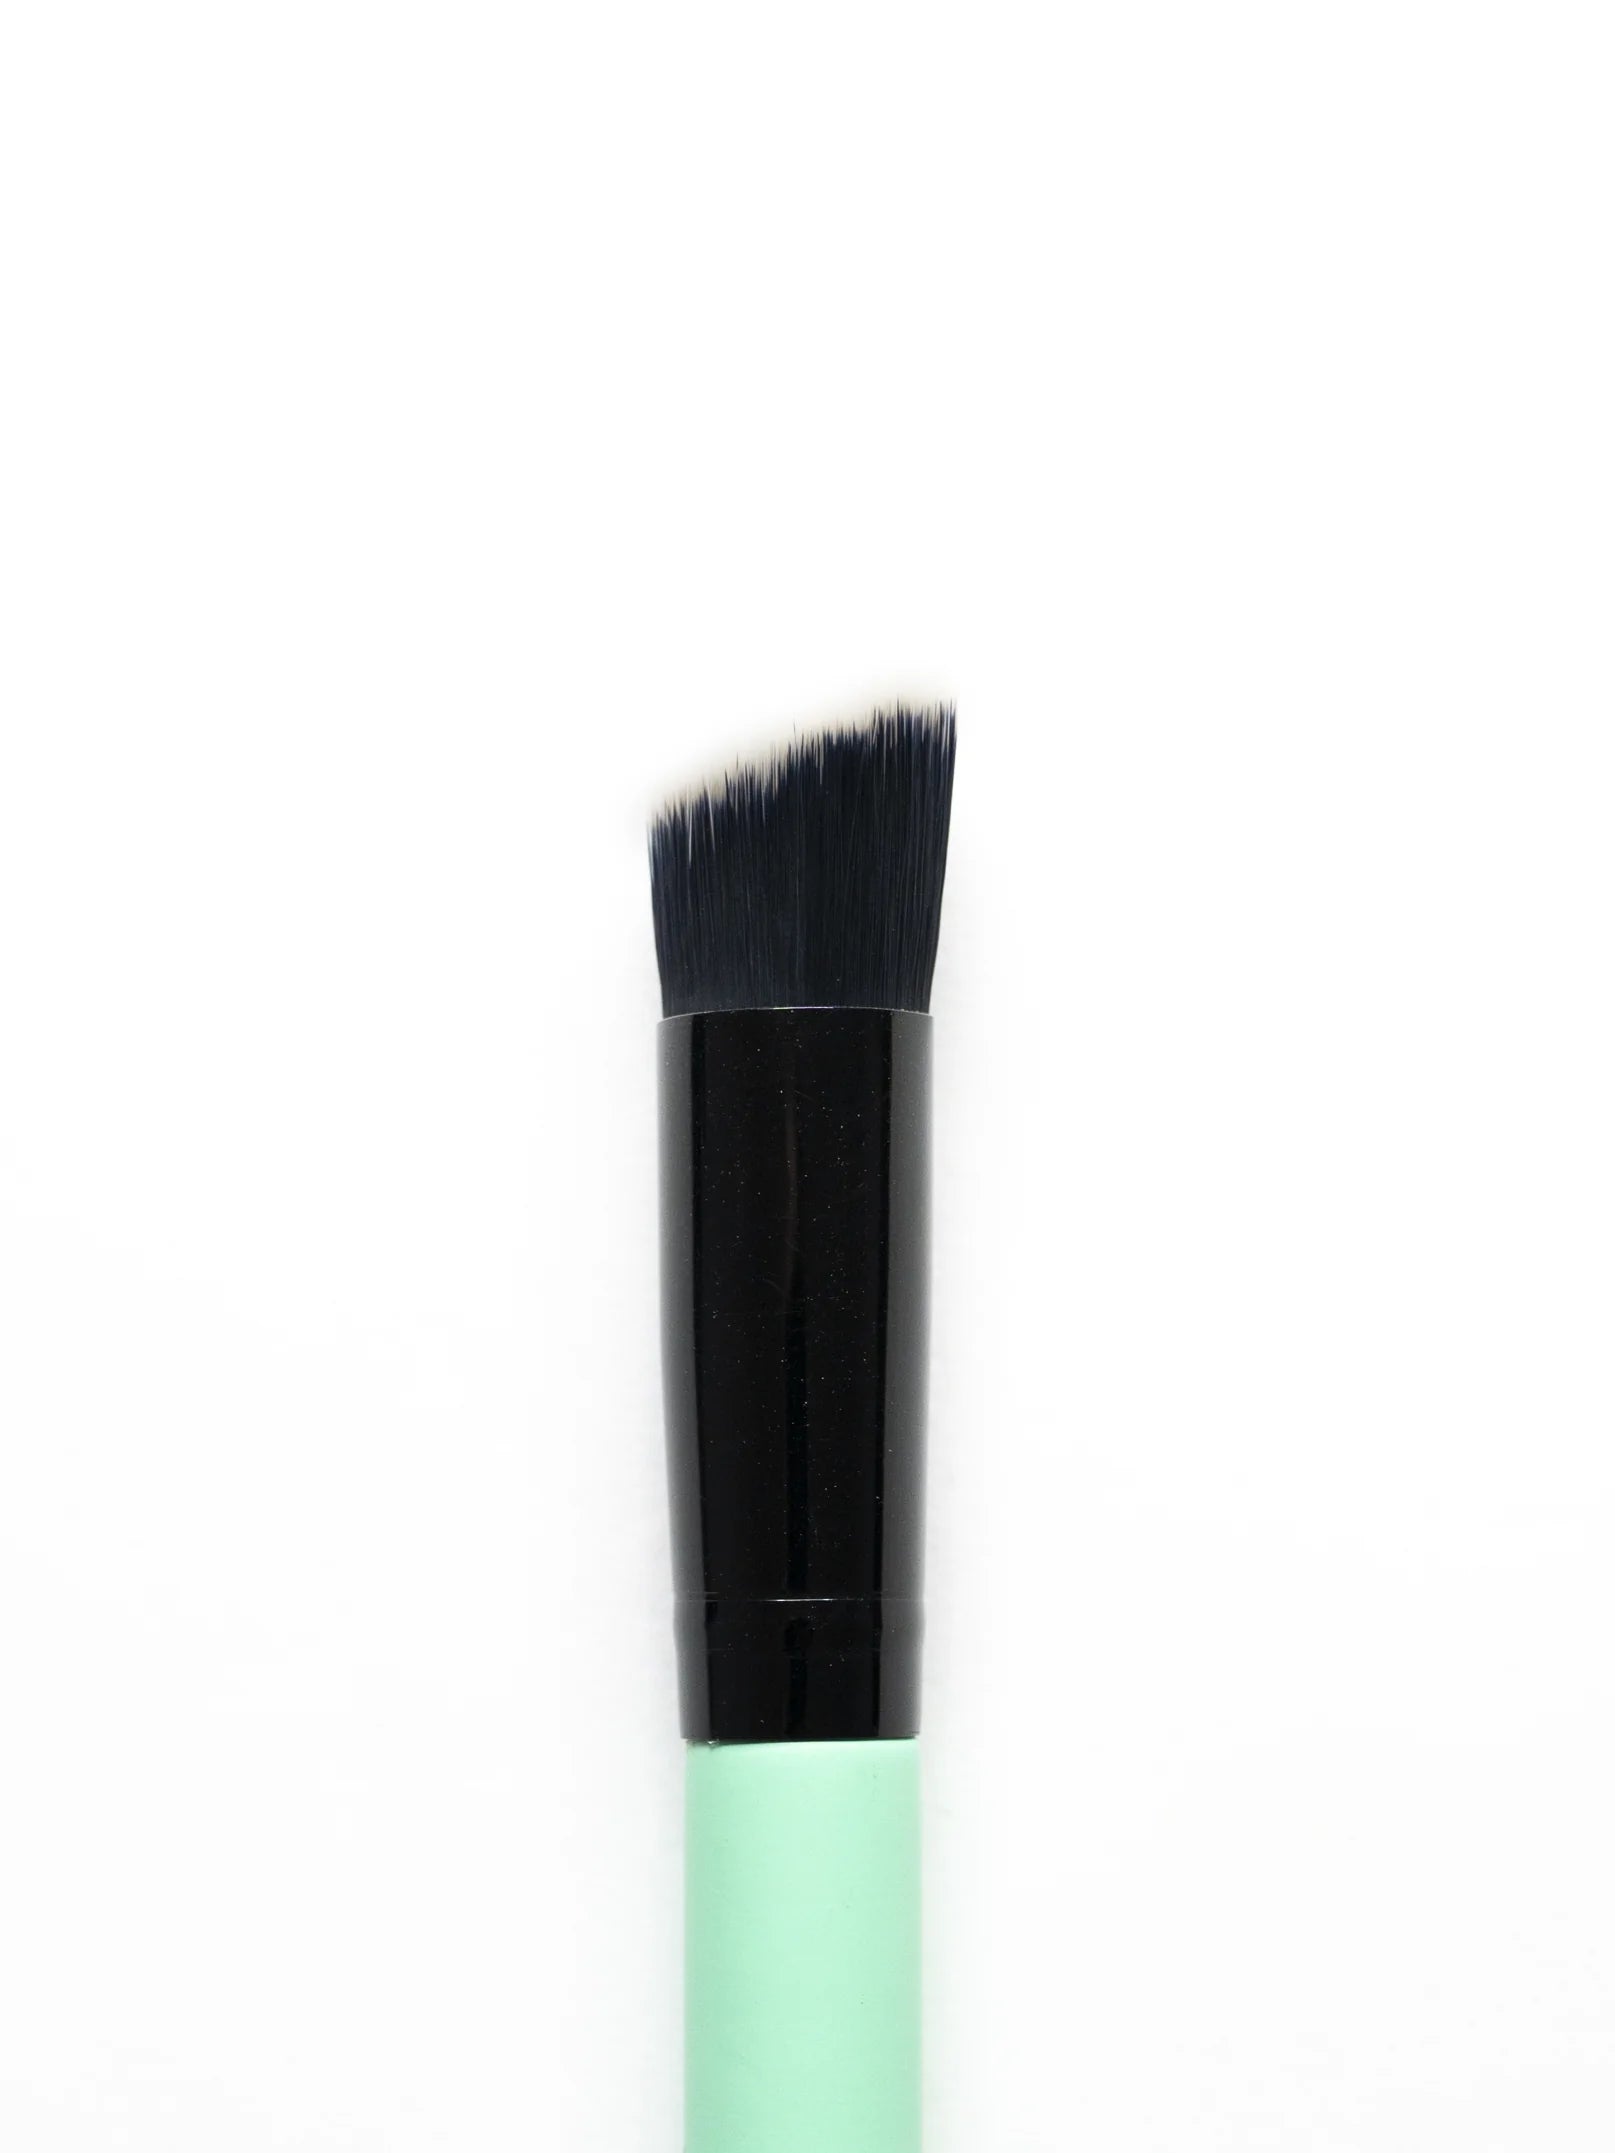 Detailed Foundation / Concealer Brush 34 Make-up Brush EDY LONDON Turquoise   [variant_option4] EDY LONDON PRODUCTS UK shop.edy.london